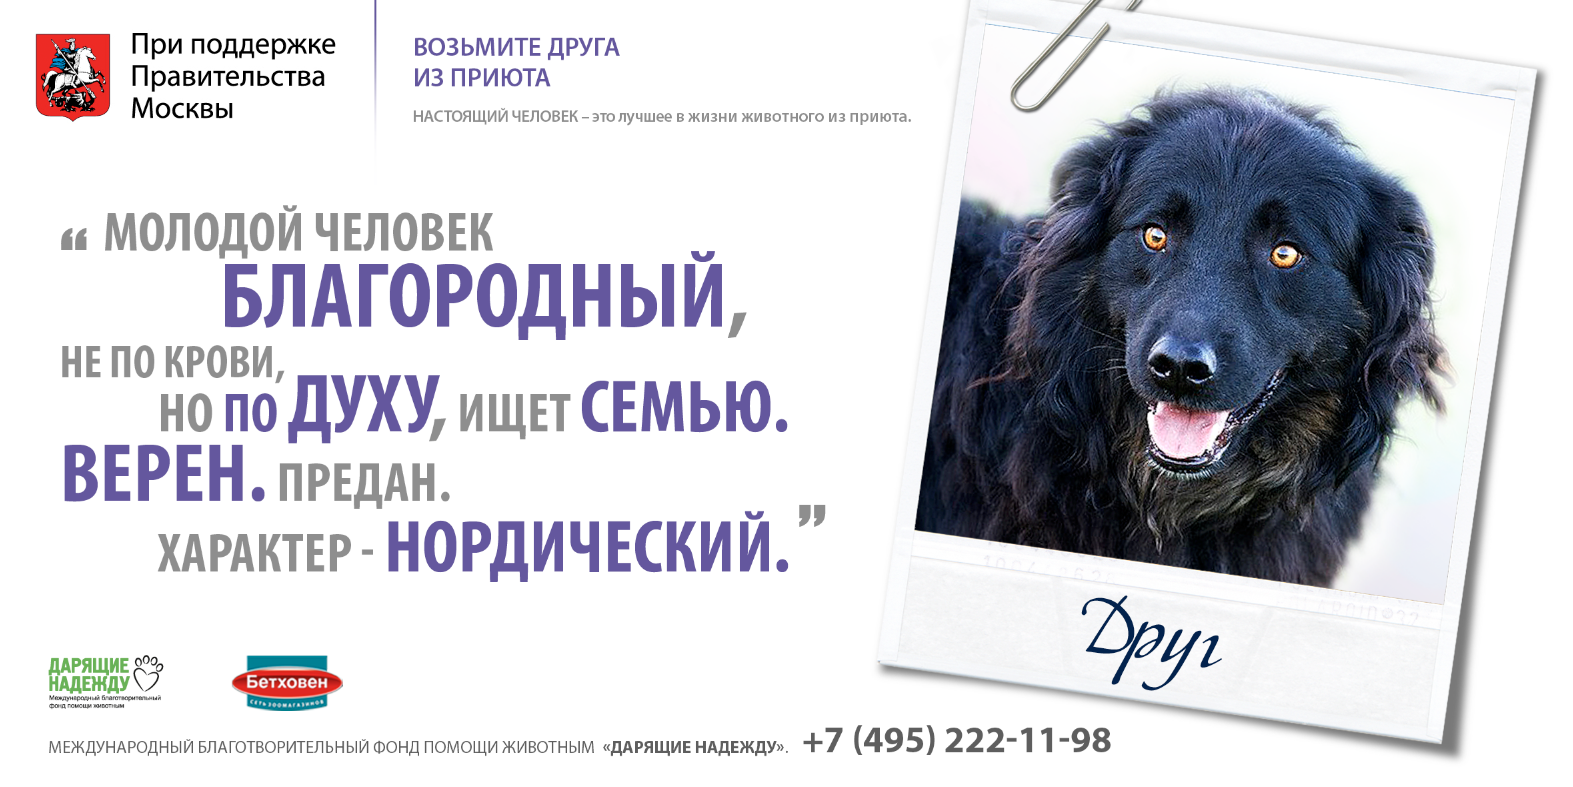 Слоган животное. Реклама приюта для животных. Социальная реклама приюта для животных. Реклама приюта для собак. Реклама приюта для бездомных животных.